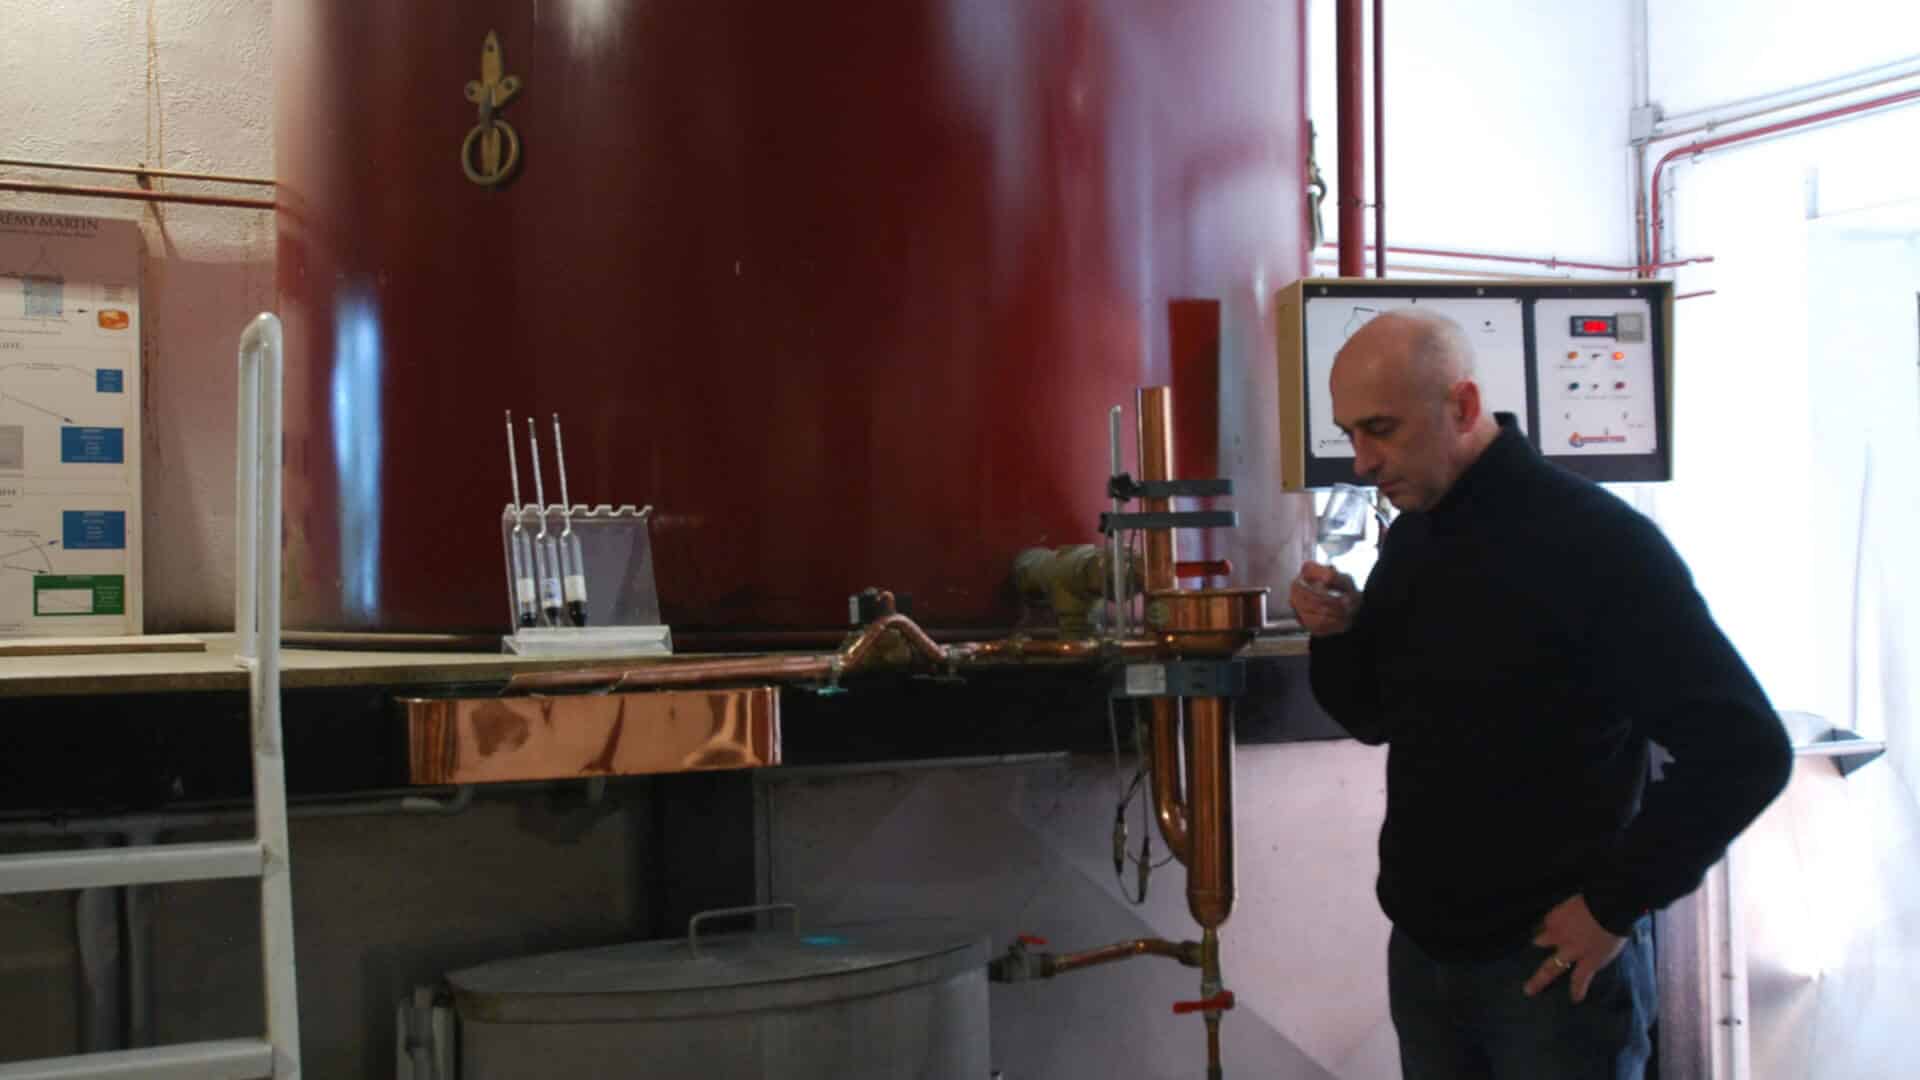 Distiller tasting his cognac brandy during distillation